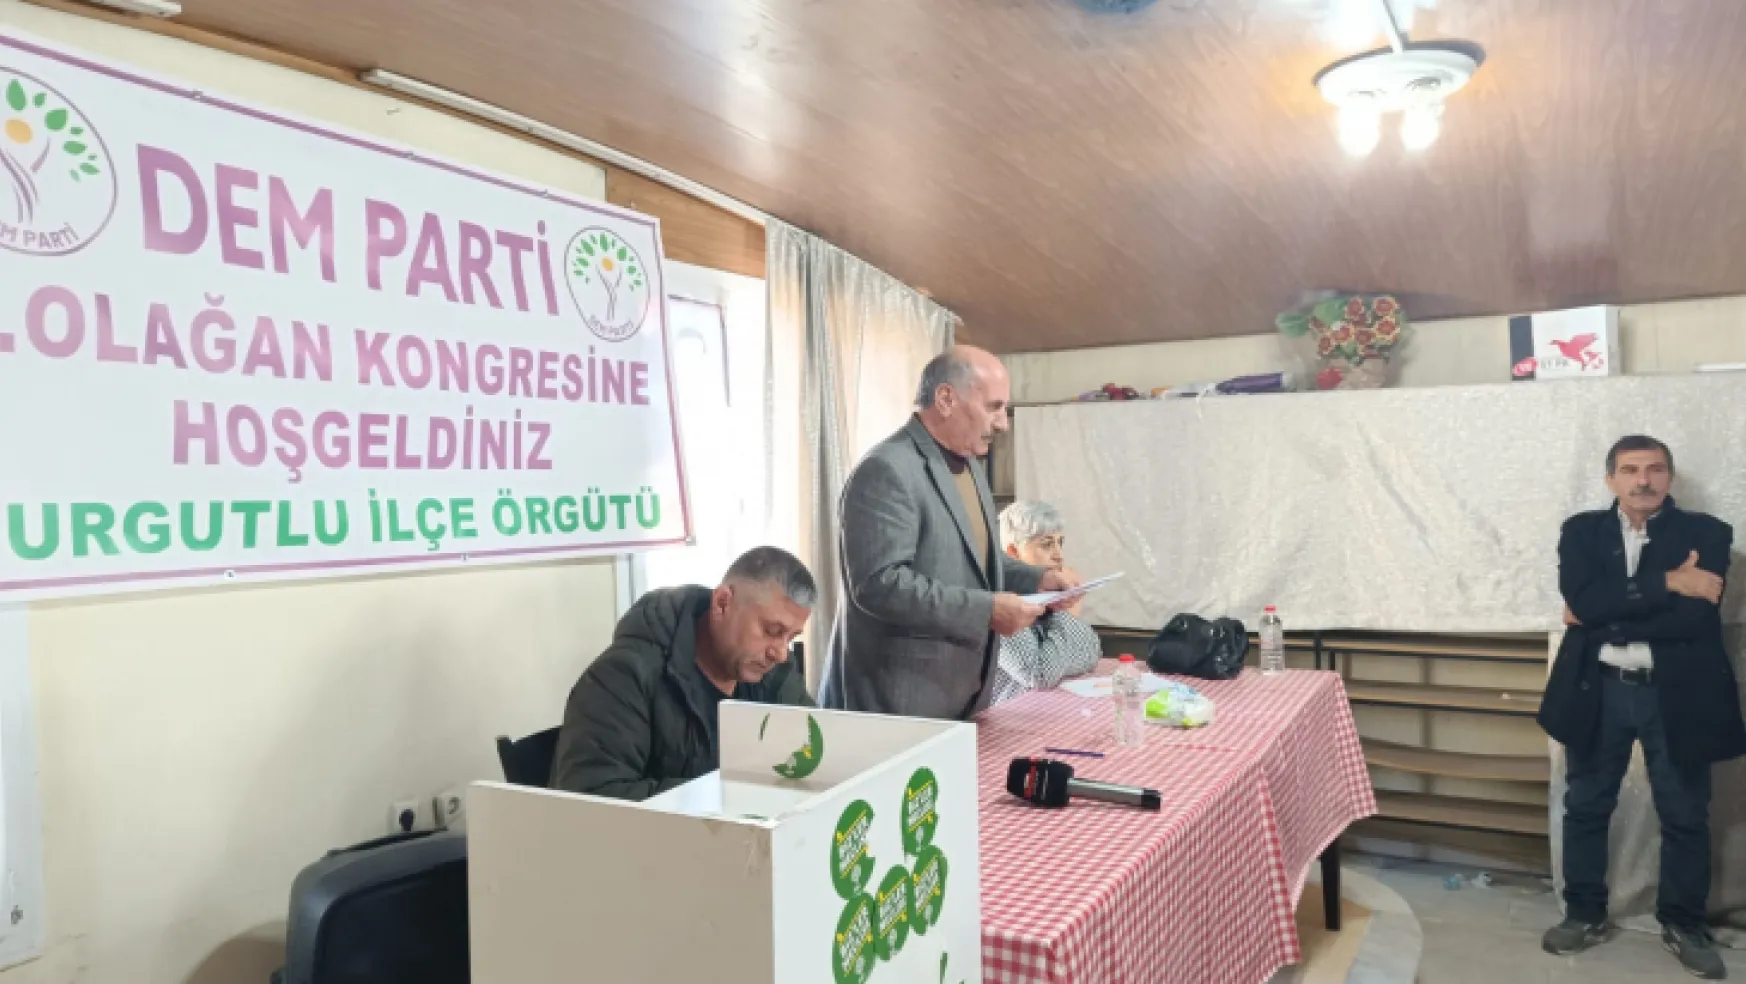 Dem Parti Turgutlu kongresi, büyük bir katılımla ve coşkuyla gerçekleşti (Videolu Haber)